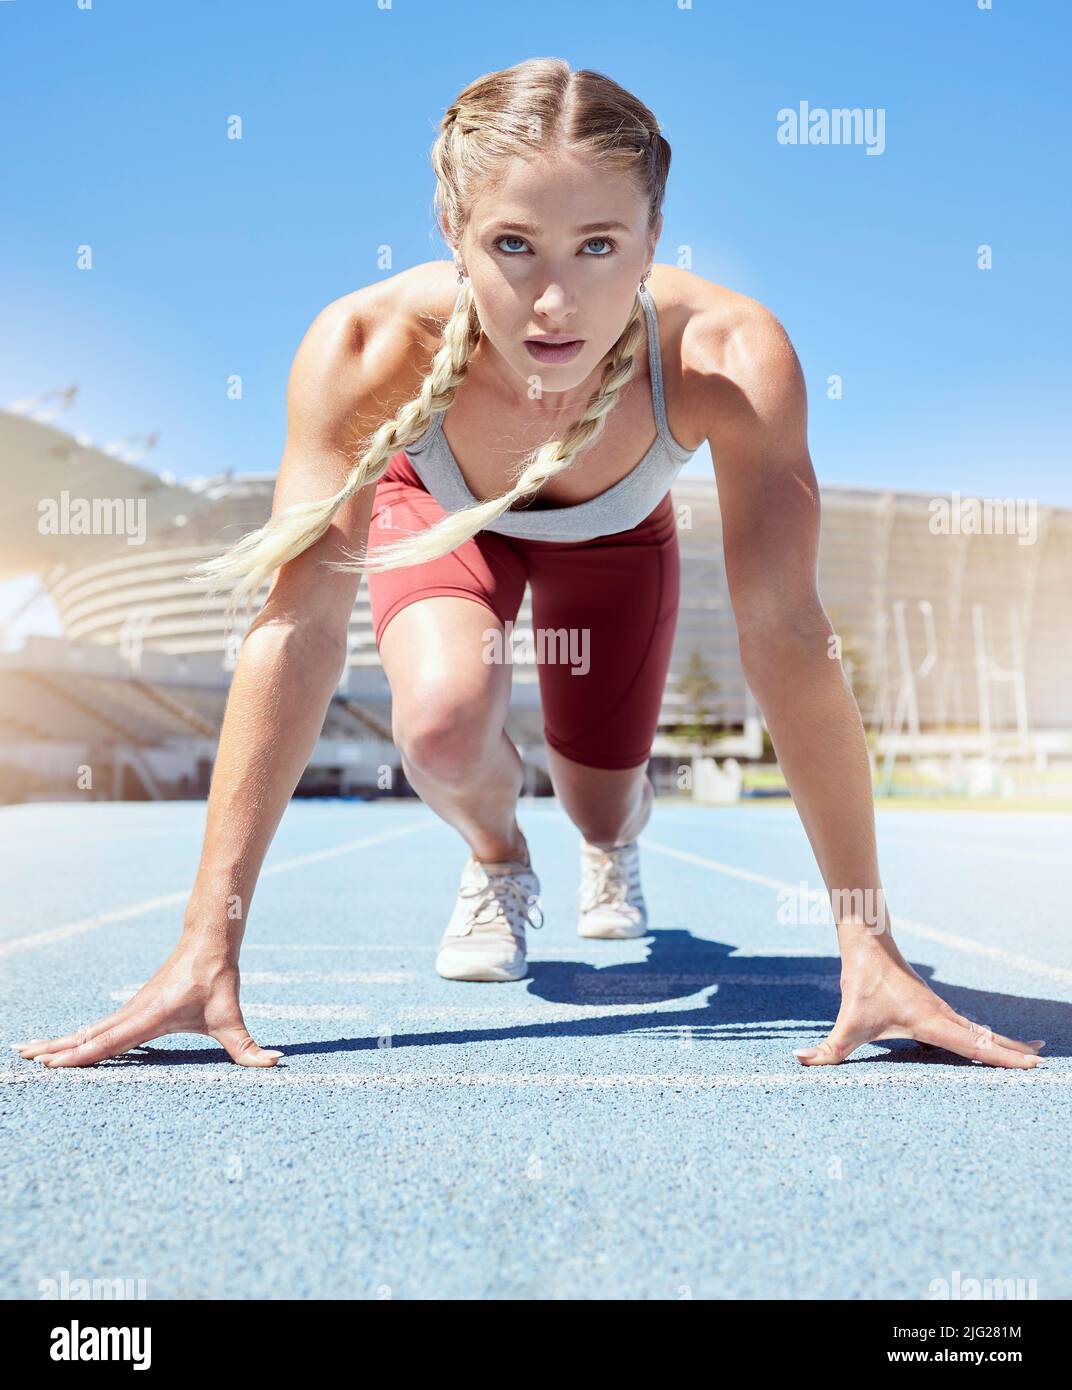 Seriöse weibliche Athletin an der Startlinie bei einem Bahnrennen im Stadion. Fit Sportlerin geistig und körperlich bereit zu starten Stockfoto